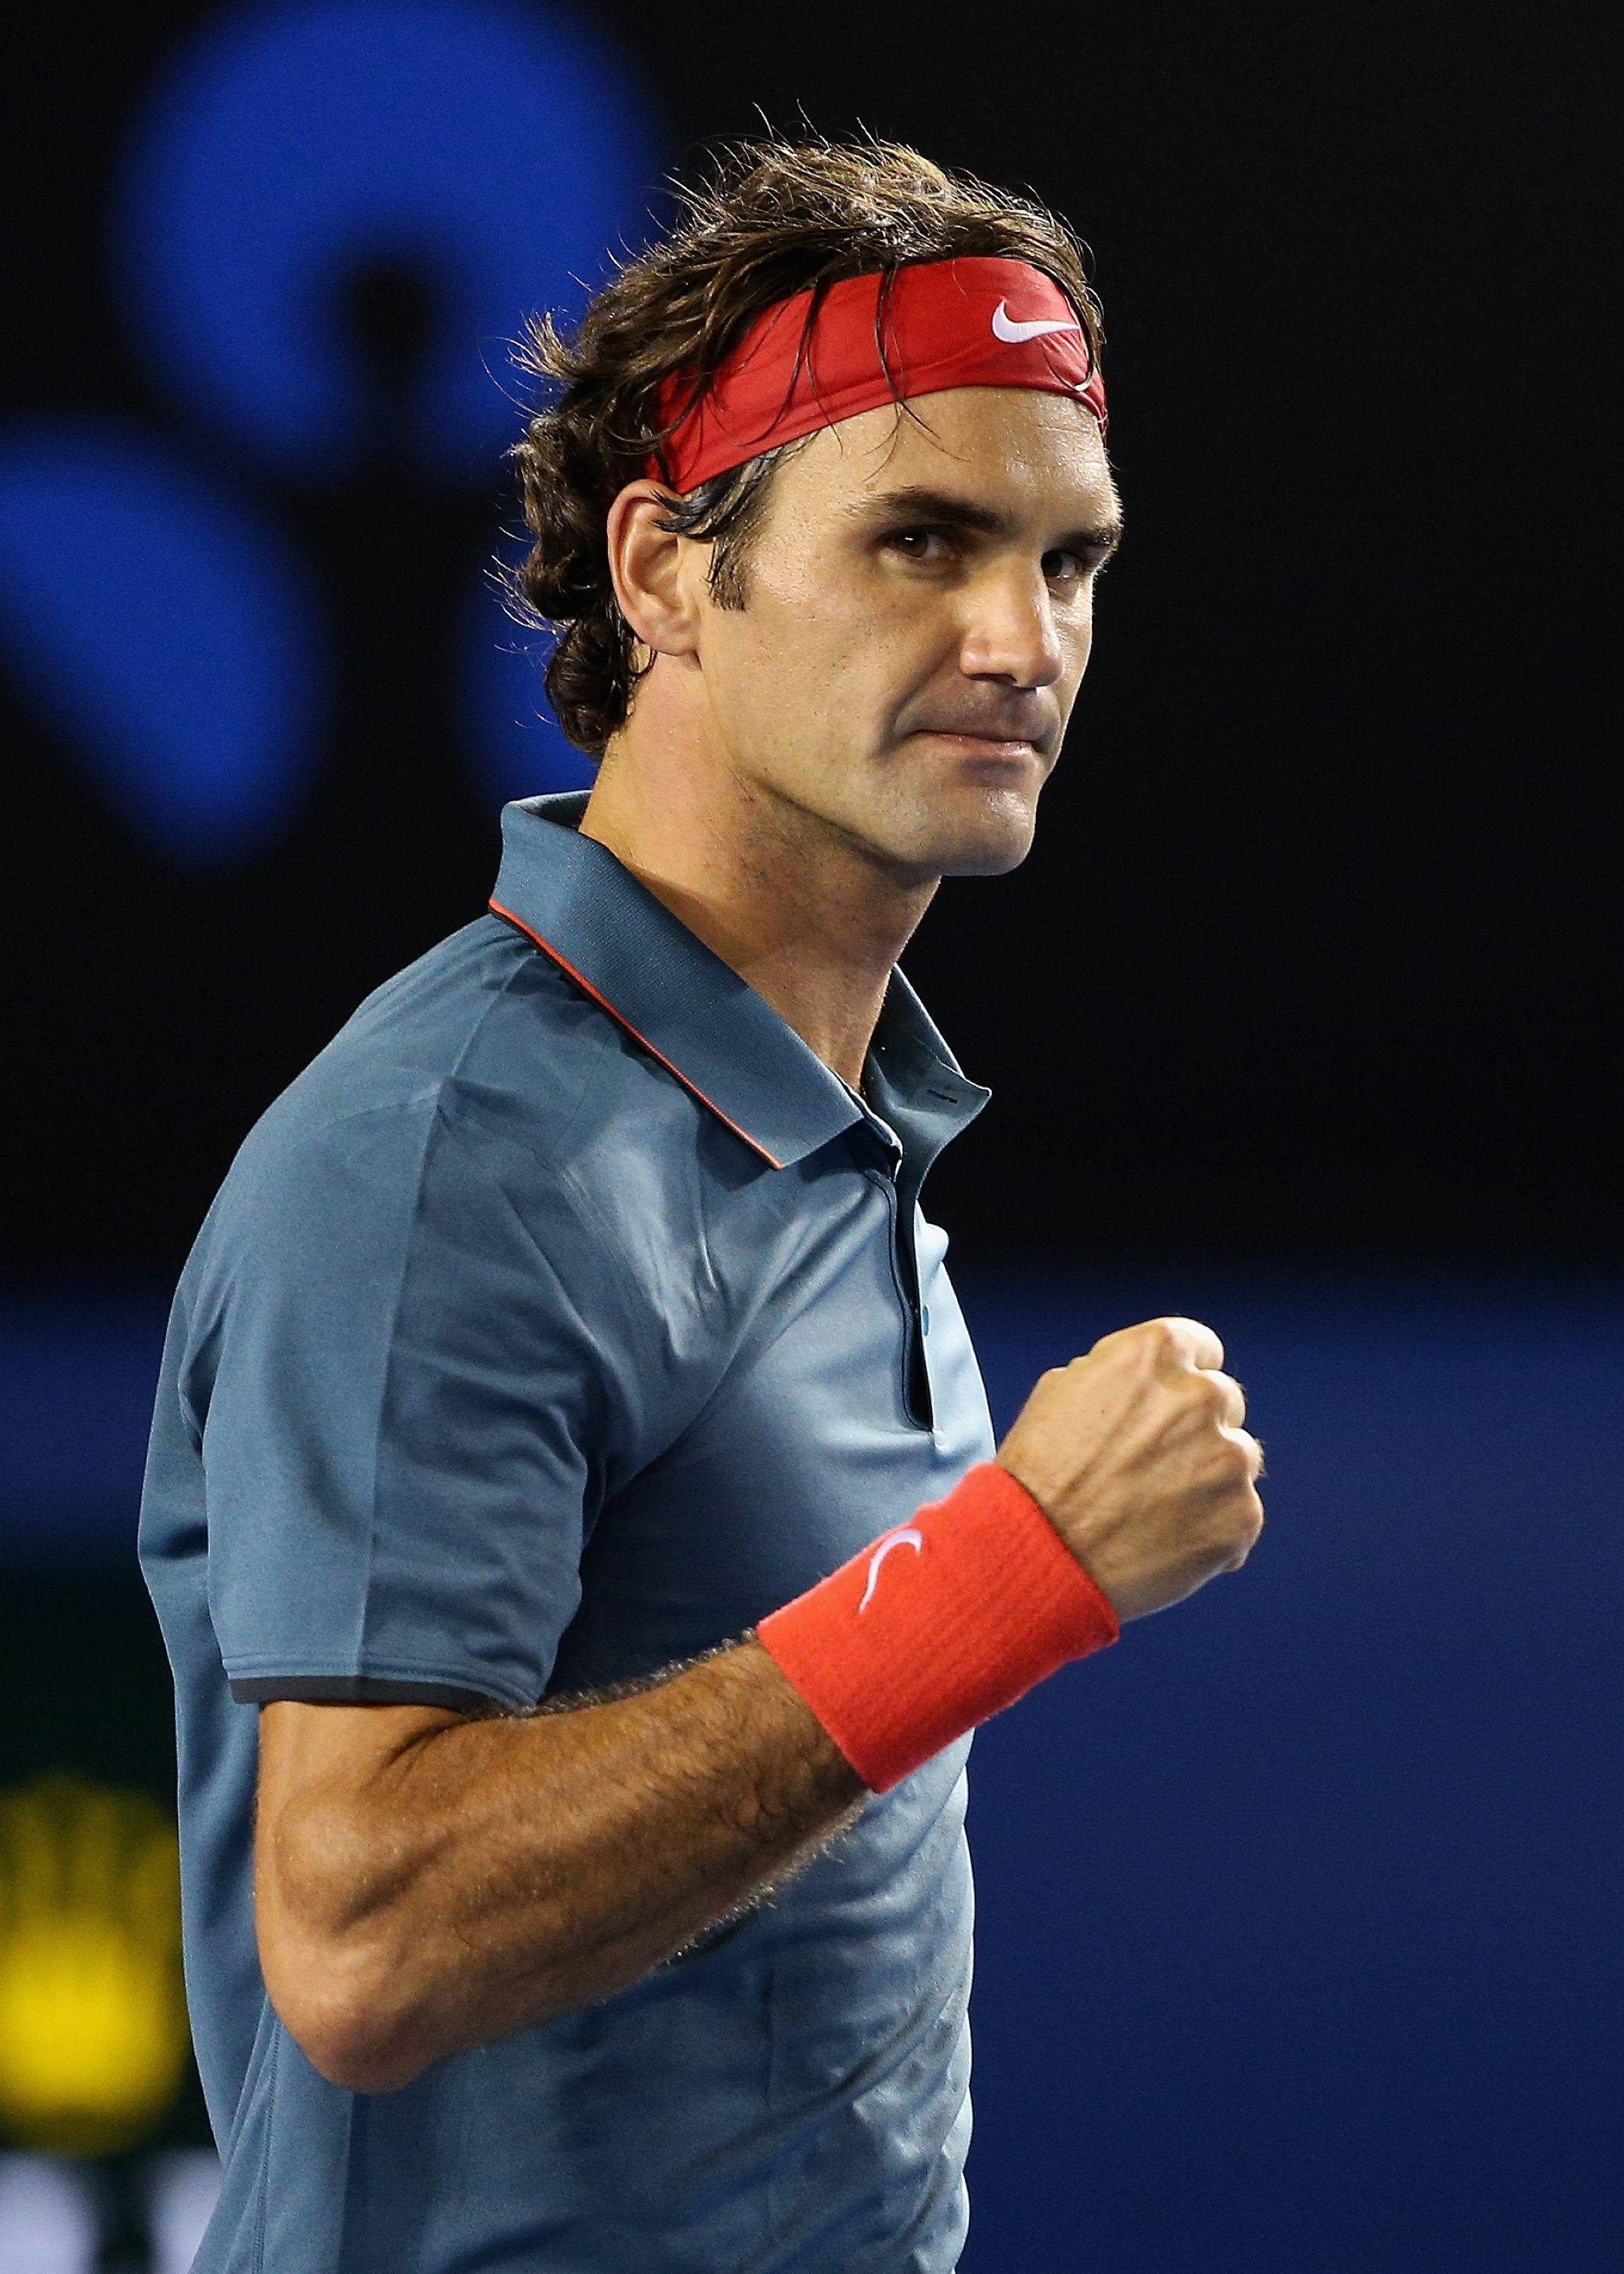 Roger Federer Wallpaper , Find HD Wallpaper For Free